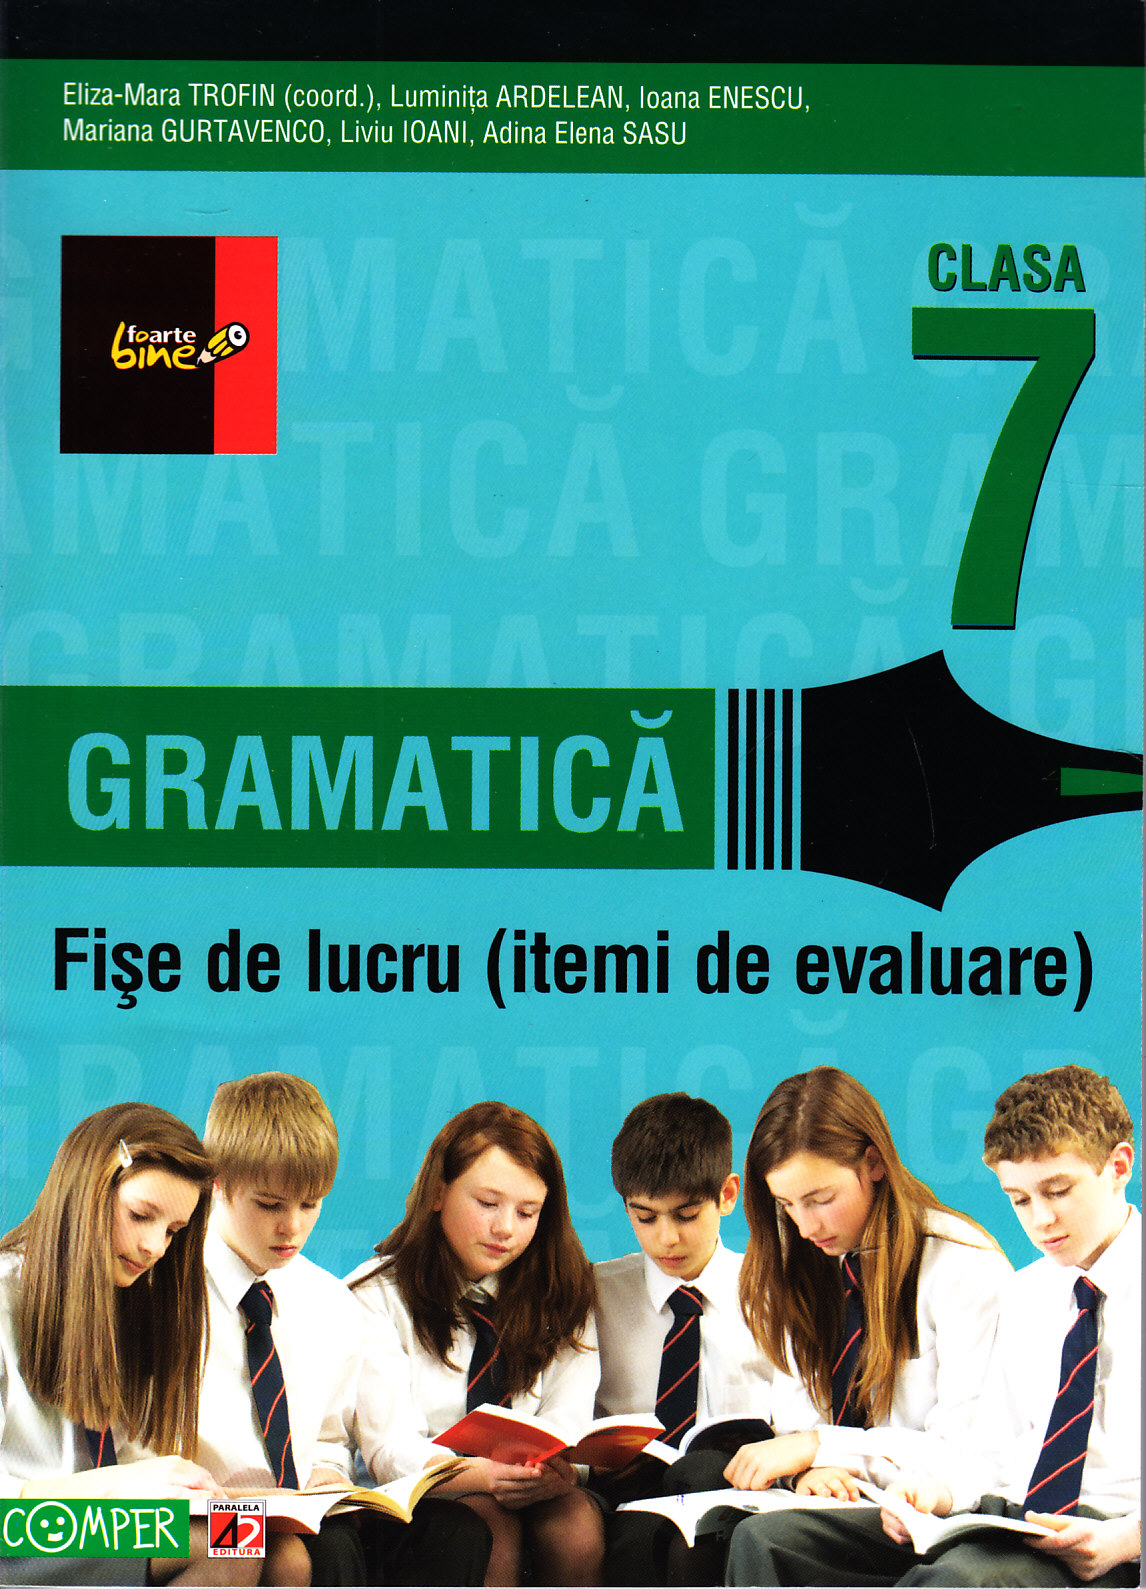 2012 Gramatica fise de lucru clasa 7 - Eliza-Mara Trofin, Luminita Ardelean